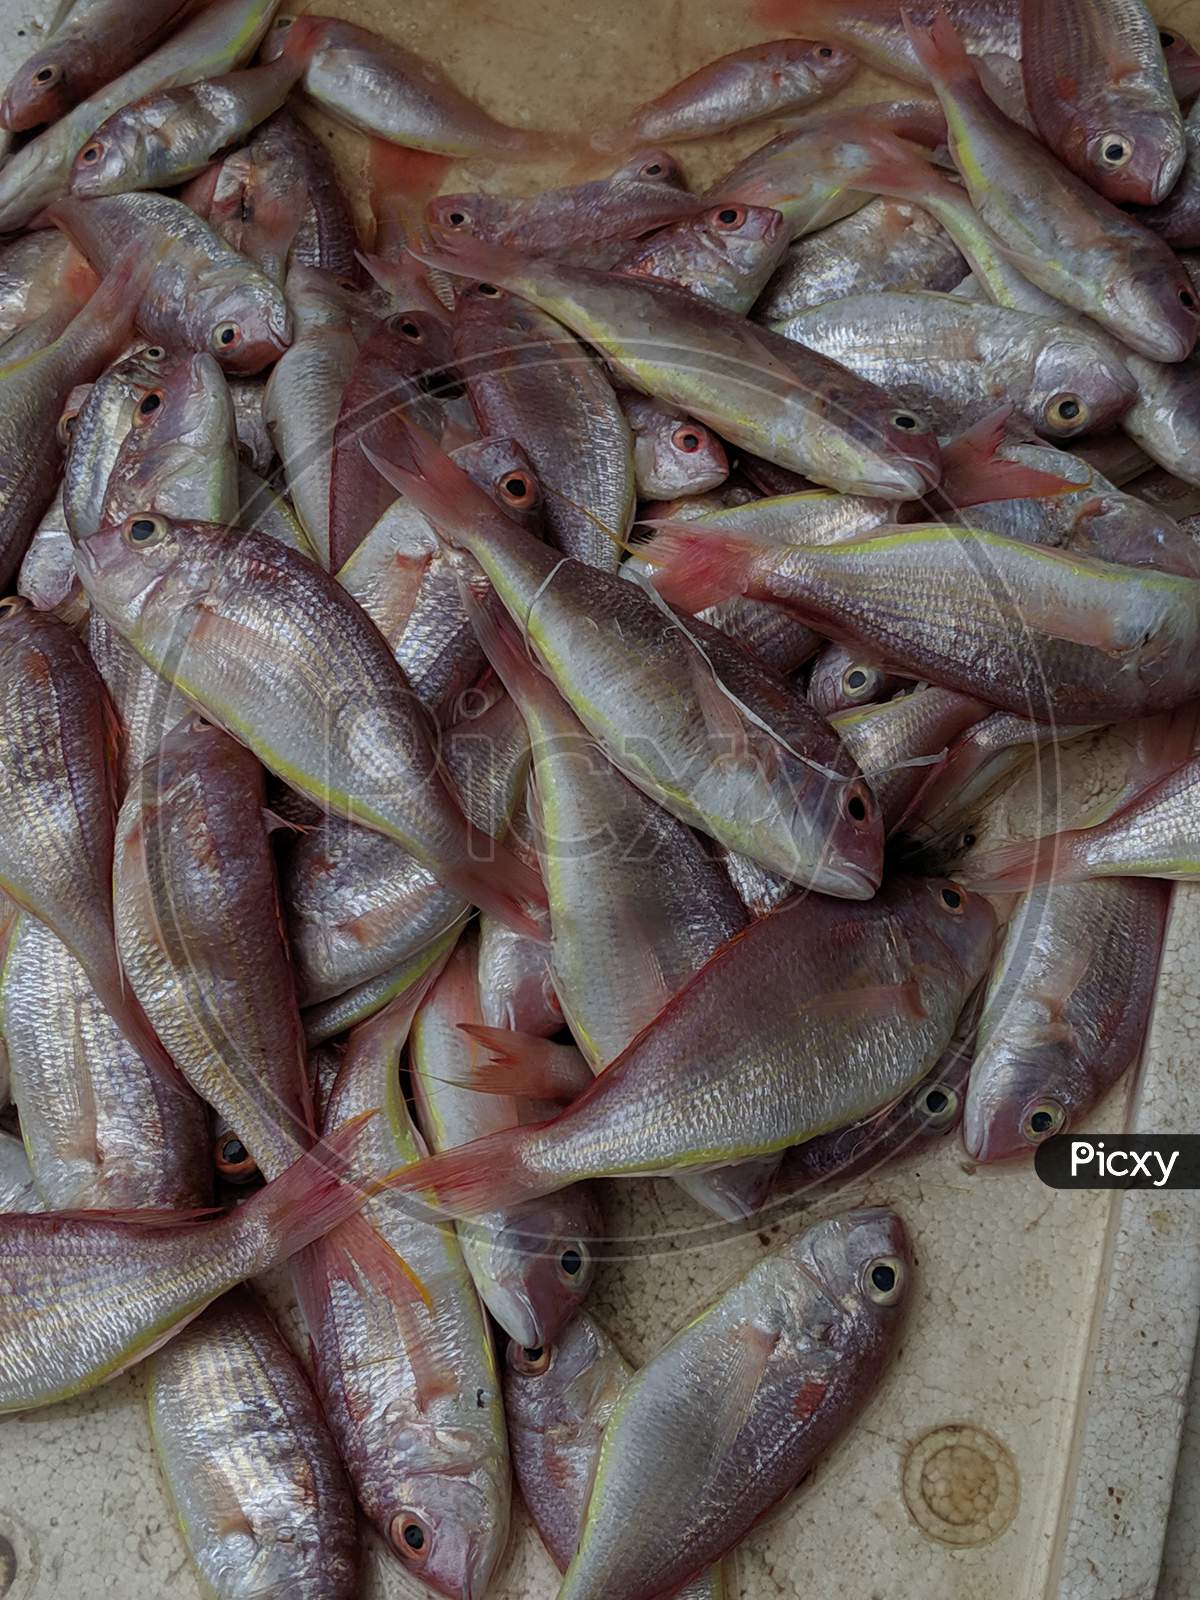 Fish Pile Closeup  At a Fish Market